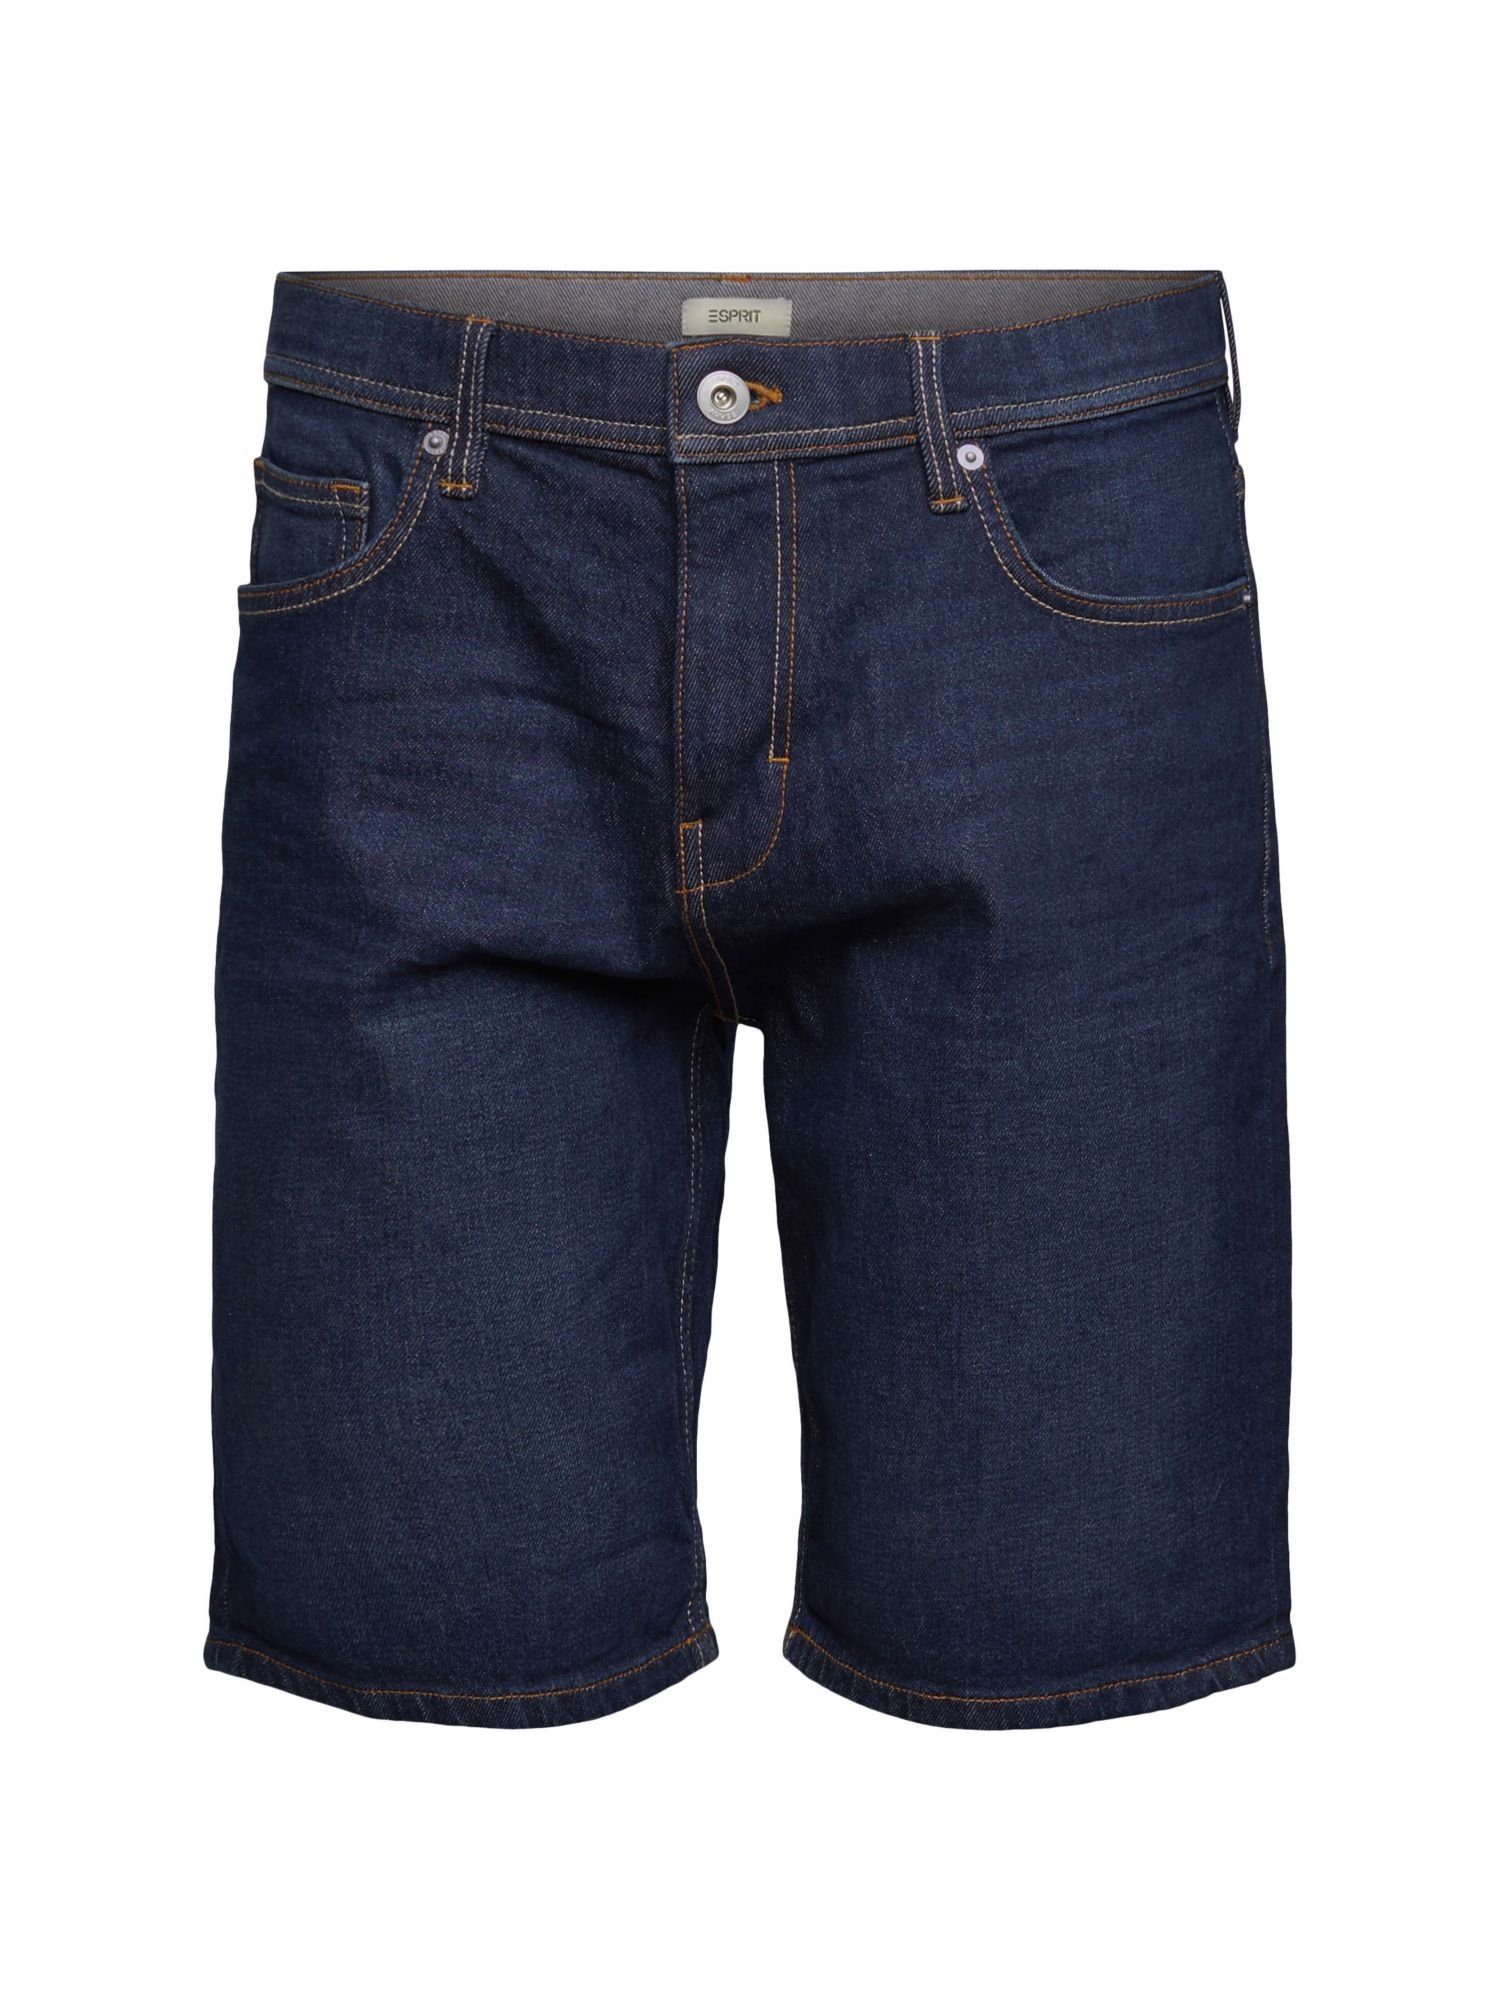 Esprit Jeansshorts Jeans Shorts aus Baumwolle BLUE DARK WASHED